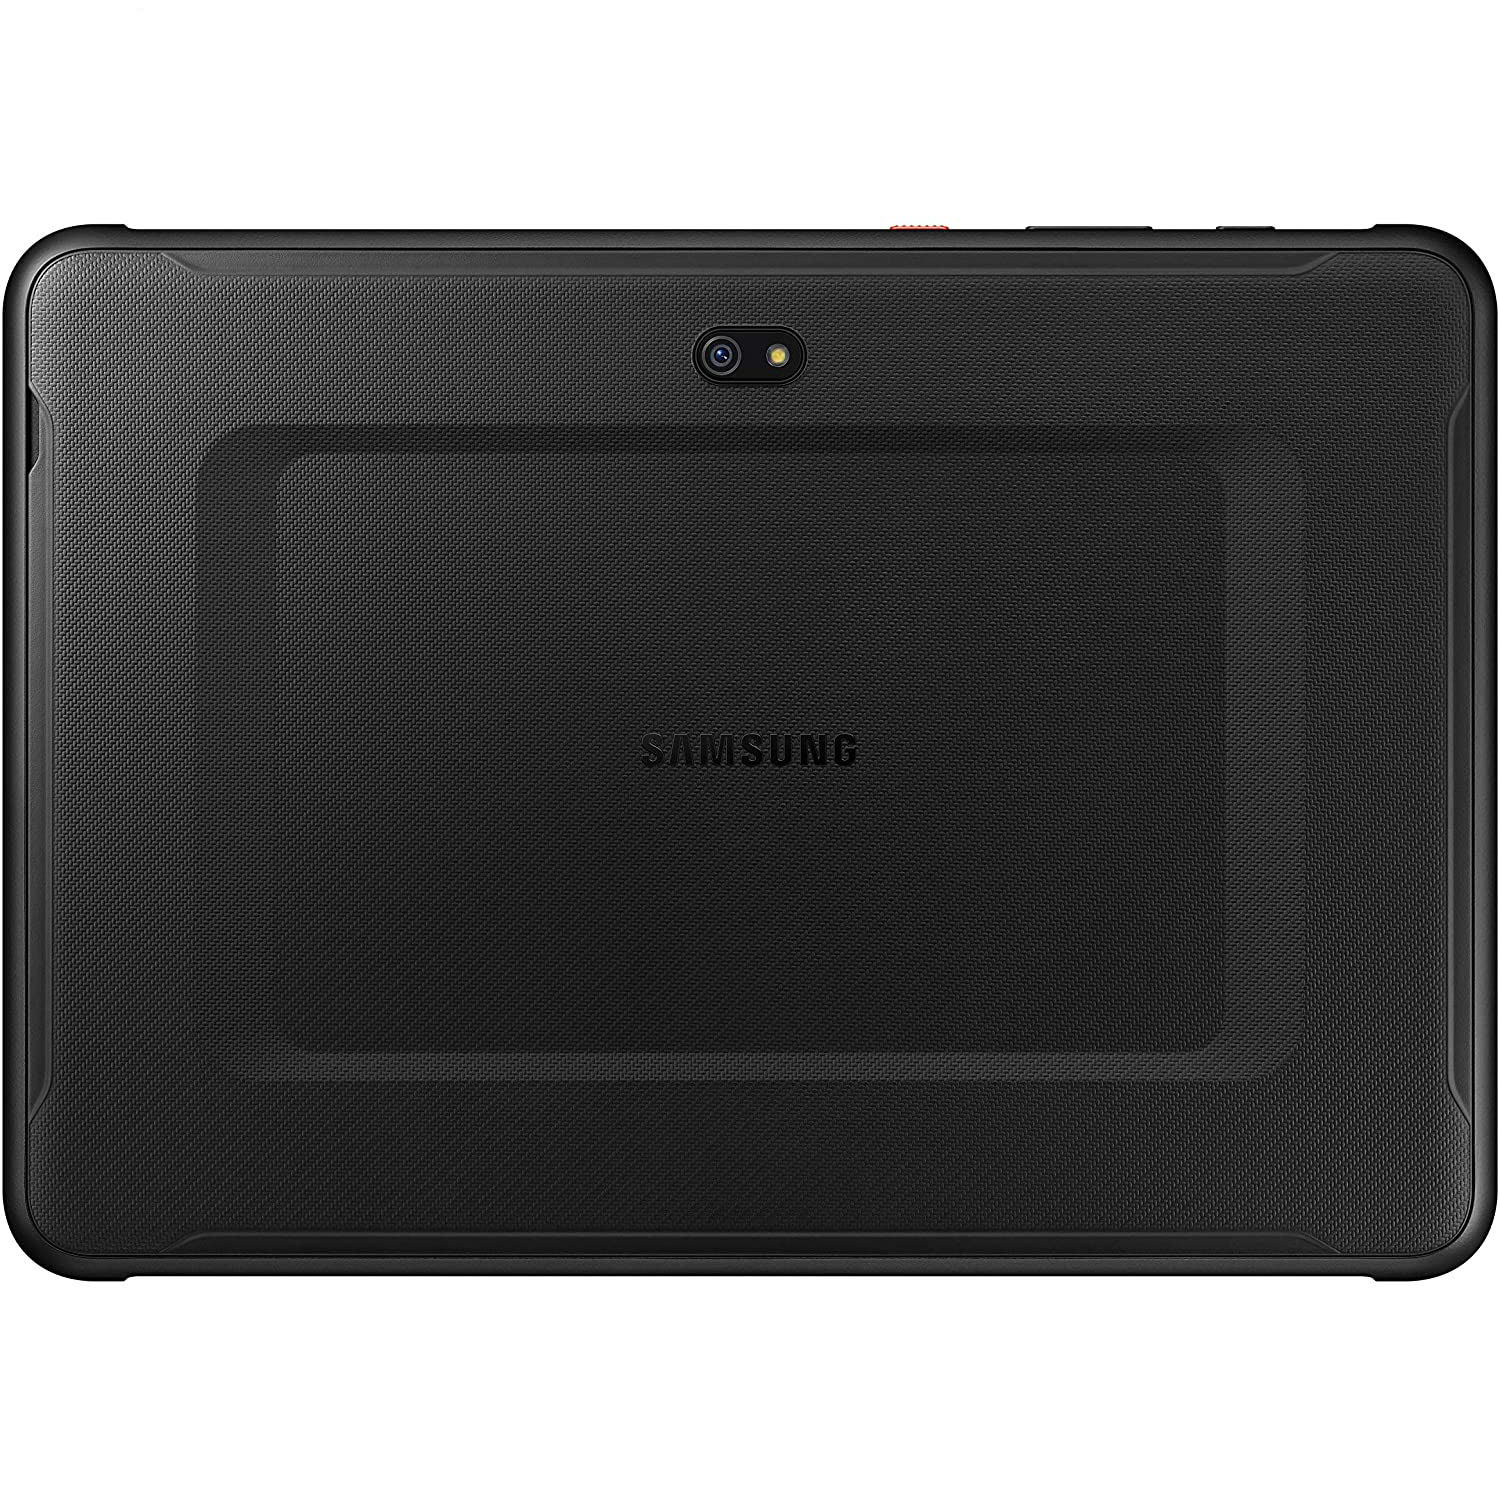  تبلت سامسونگ مدل Galaxy Active Pro SM-T547 ظرفیت 64 گیگابایت 